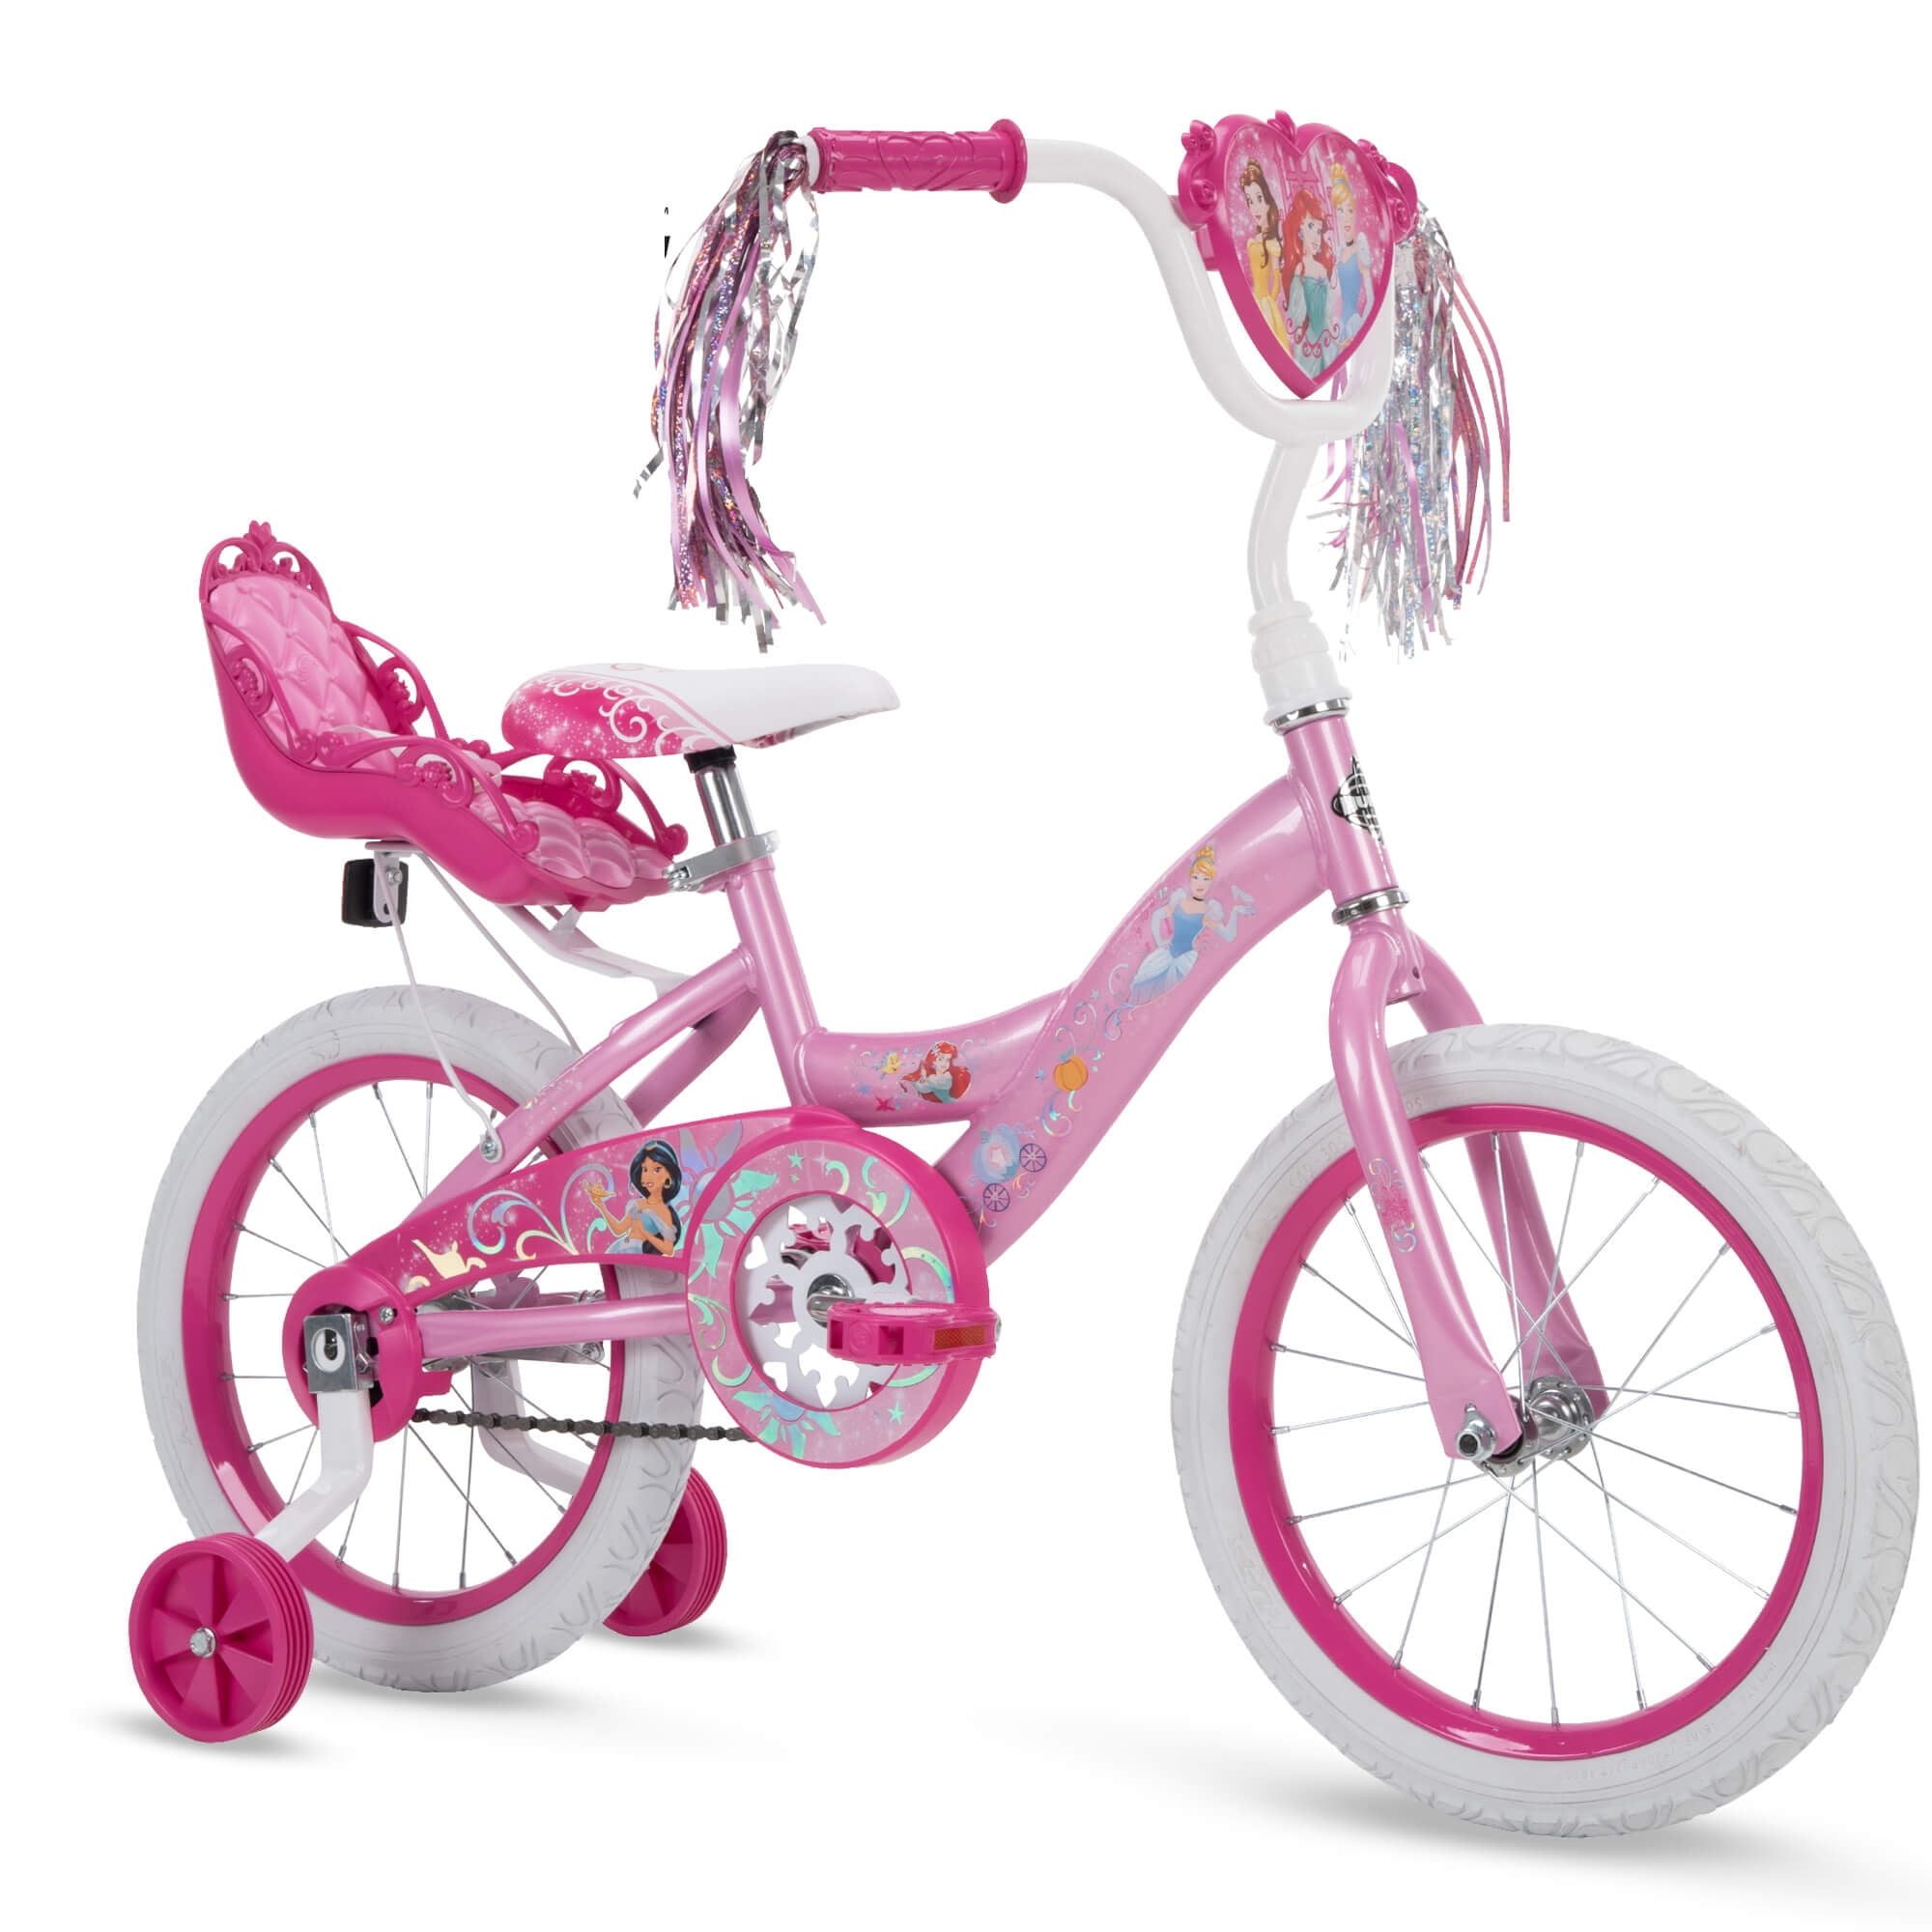 Little Girls Pink Bike Kids Bicycle Disney Princess 12 Single Speed 